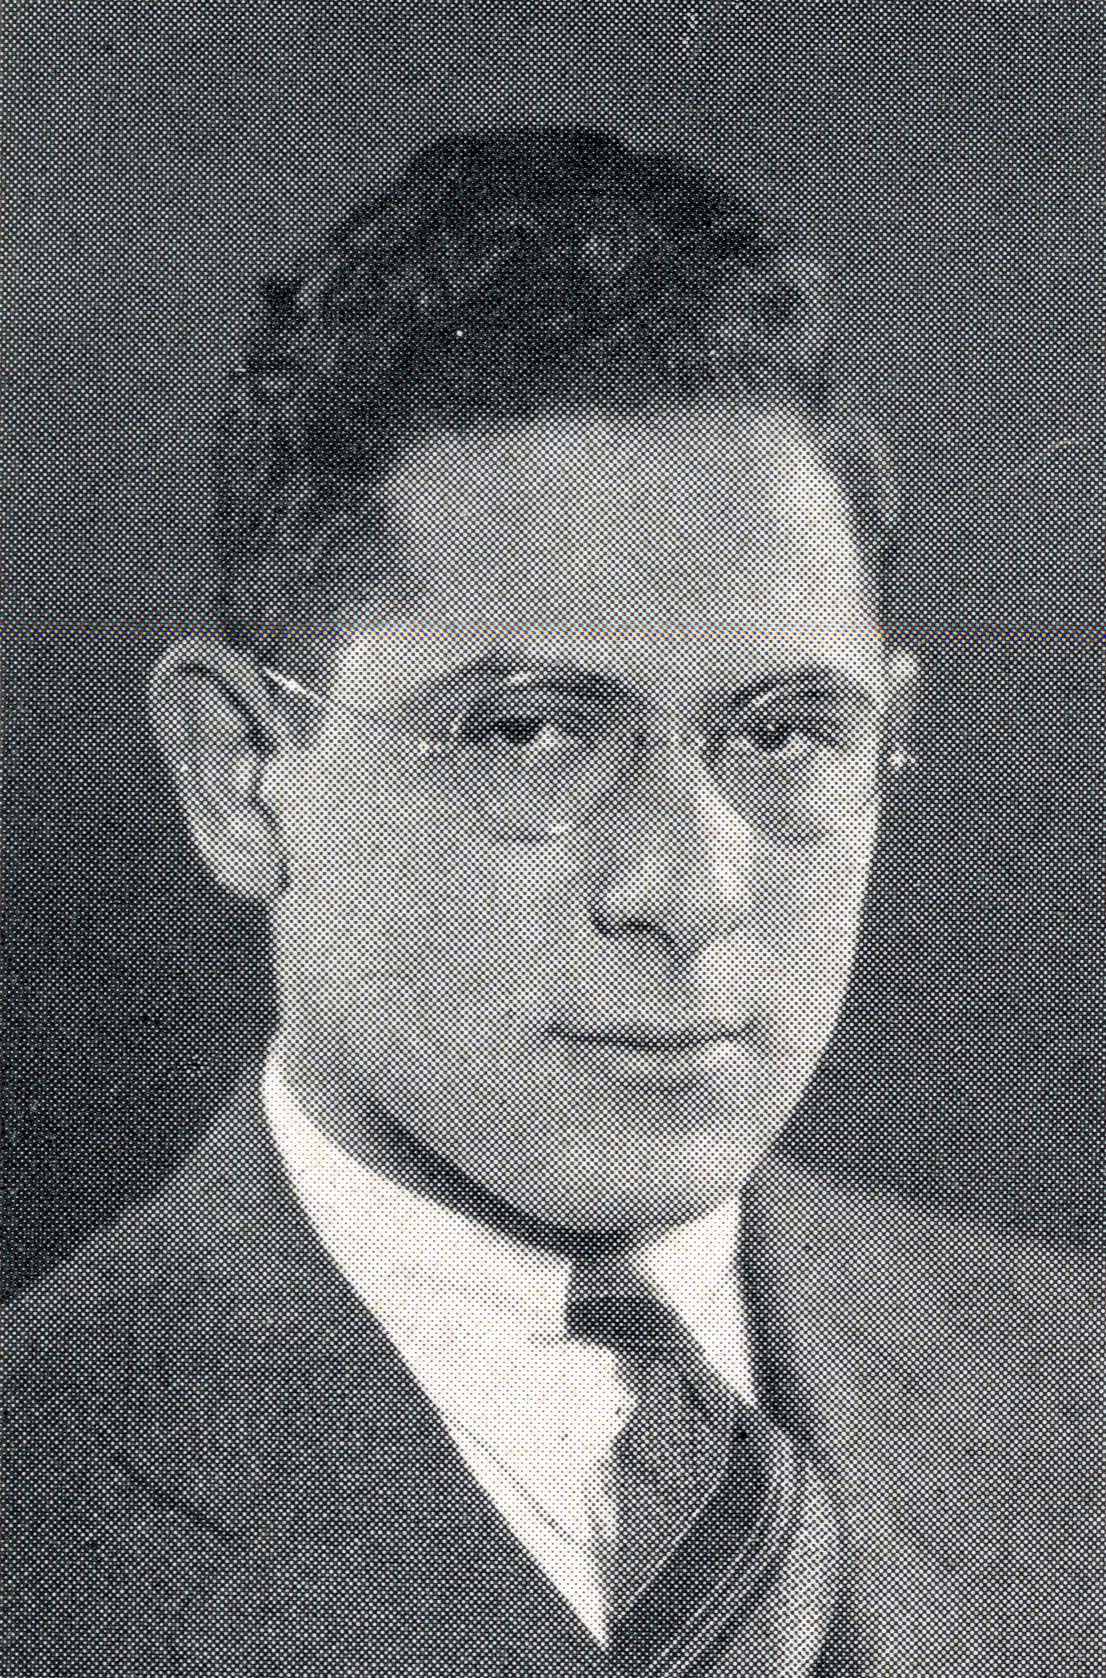 Leo Yanoff, 1930